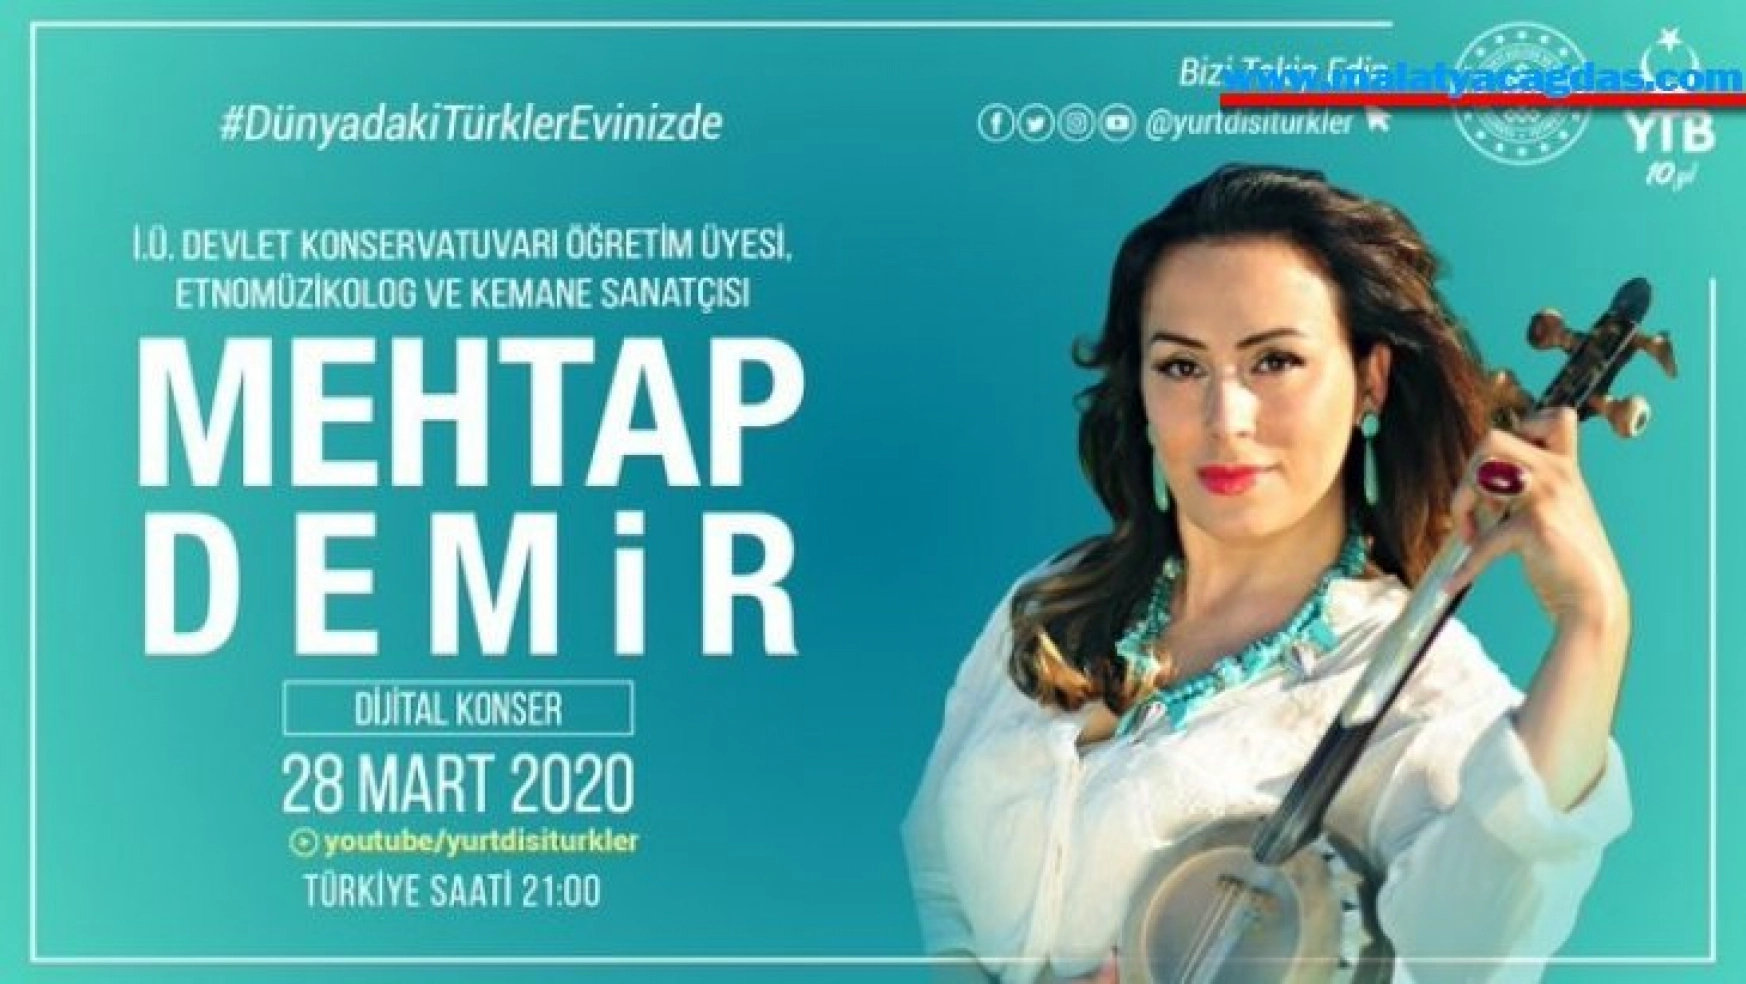 YTB'den 'Dünyadaki Türkler Evinizde' mottosuyla dijital konserler